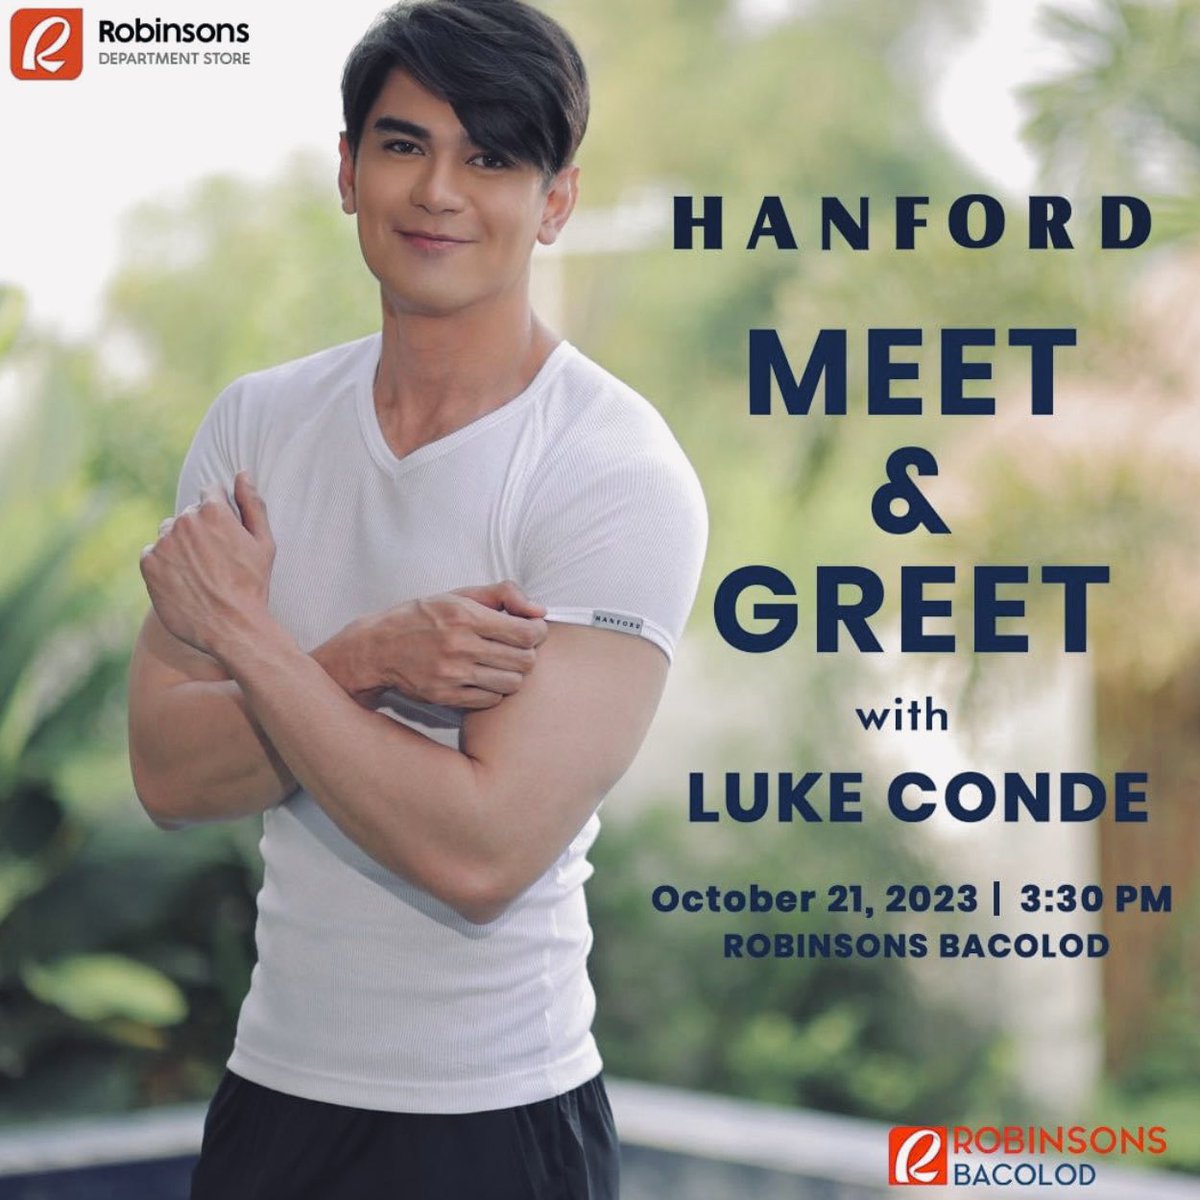 Magkita kita po tayo sa Sabado Oct 21, 2023  3:30pm sa Robinsons Bacolod para sa #HANFORD Meet & Greet! 

#LukeConde